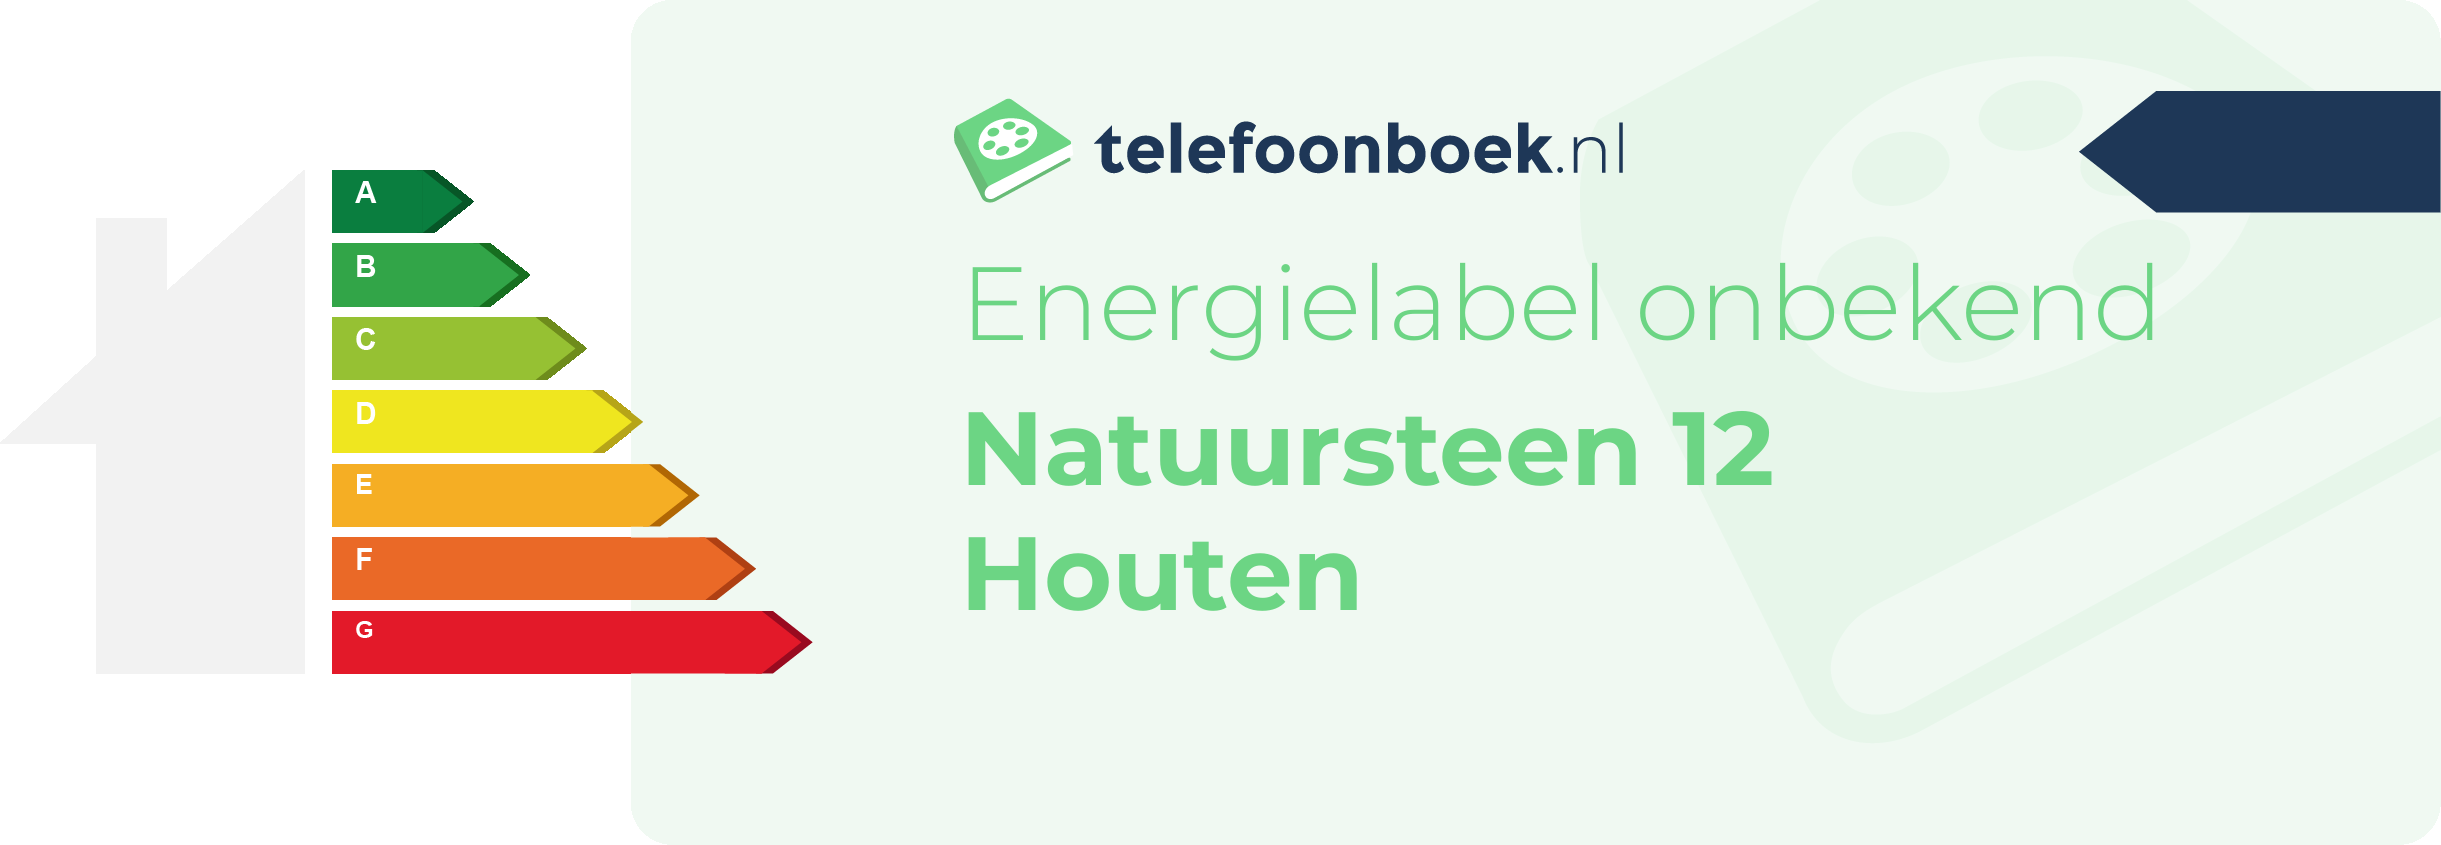 Energielabel Natuursteen 12 Houten